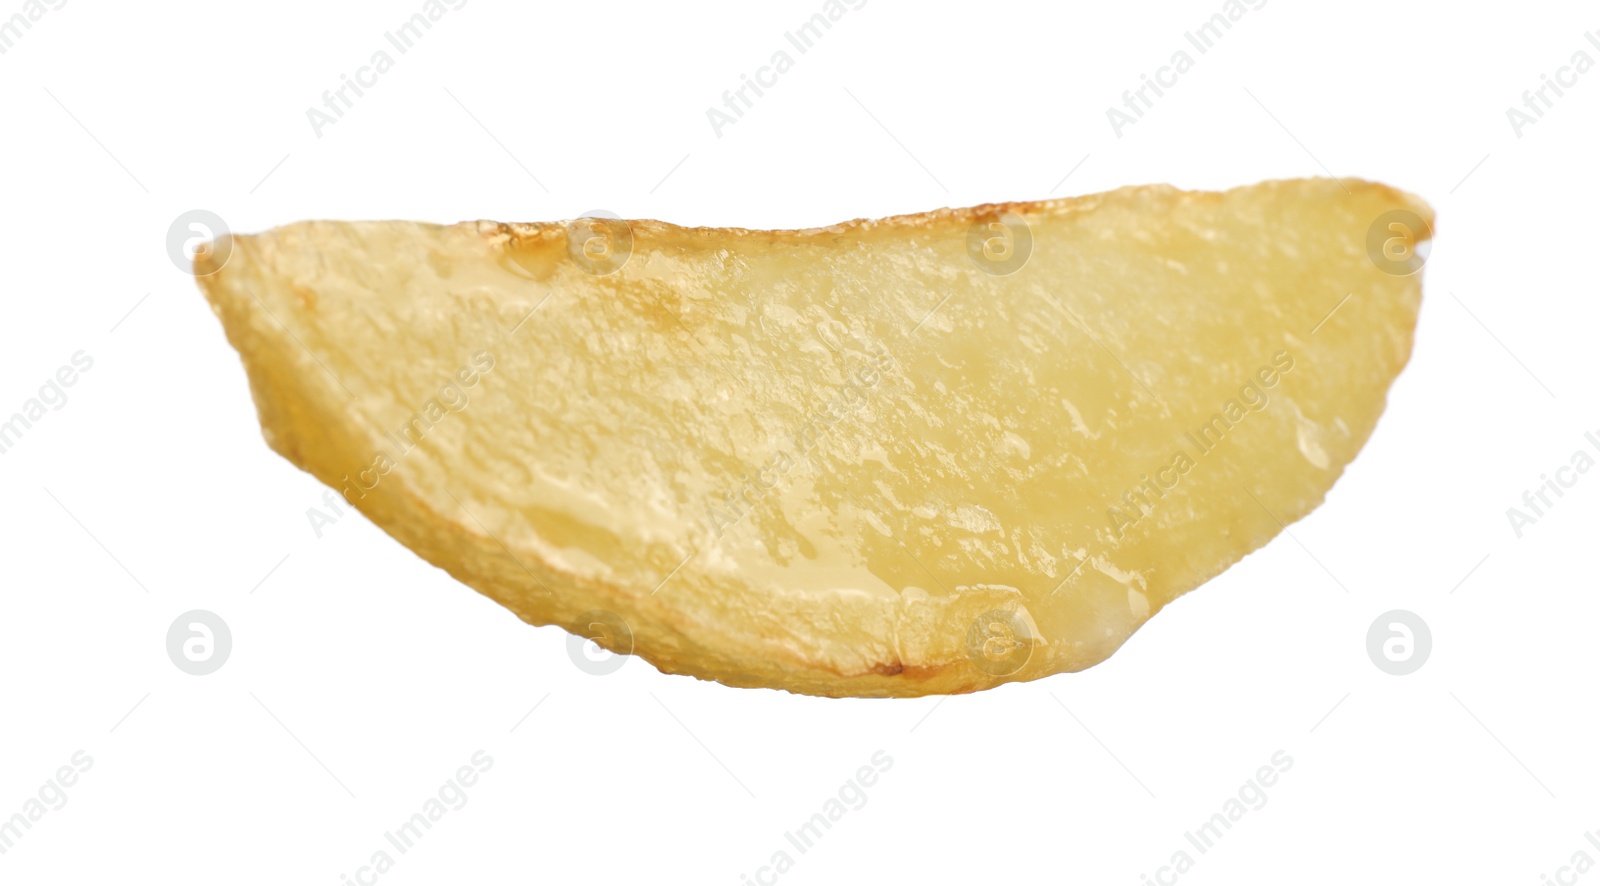 Photo of Tasty baked potato wedge isolated on white